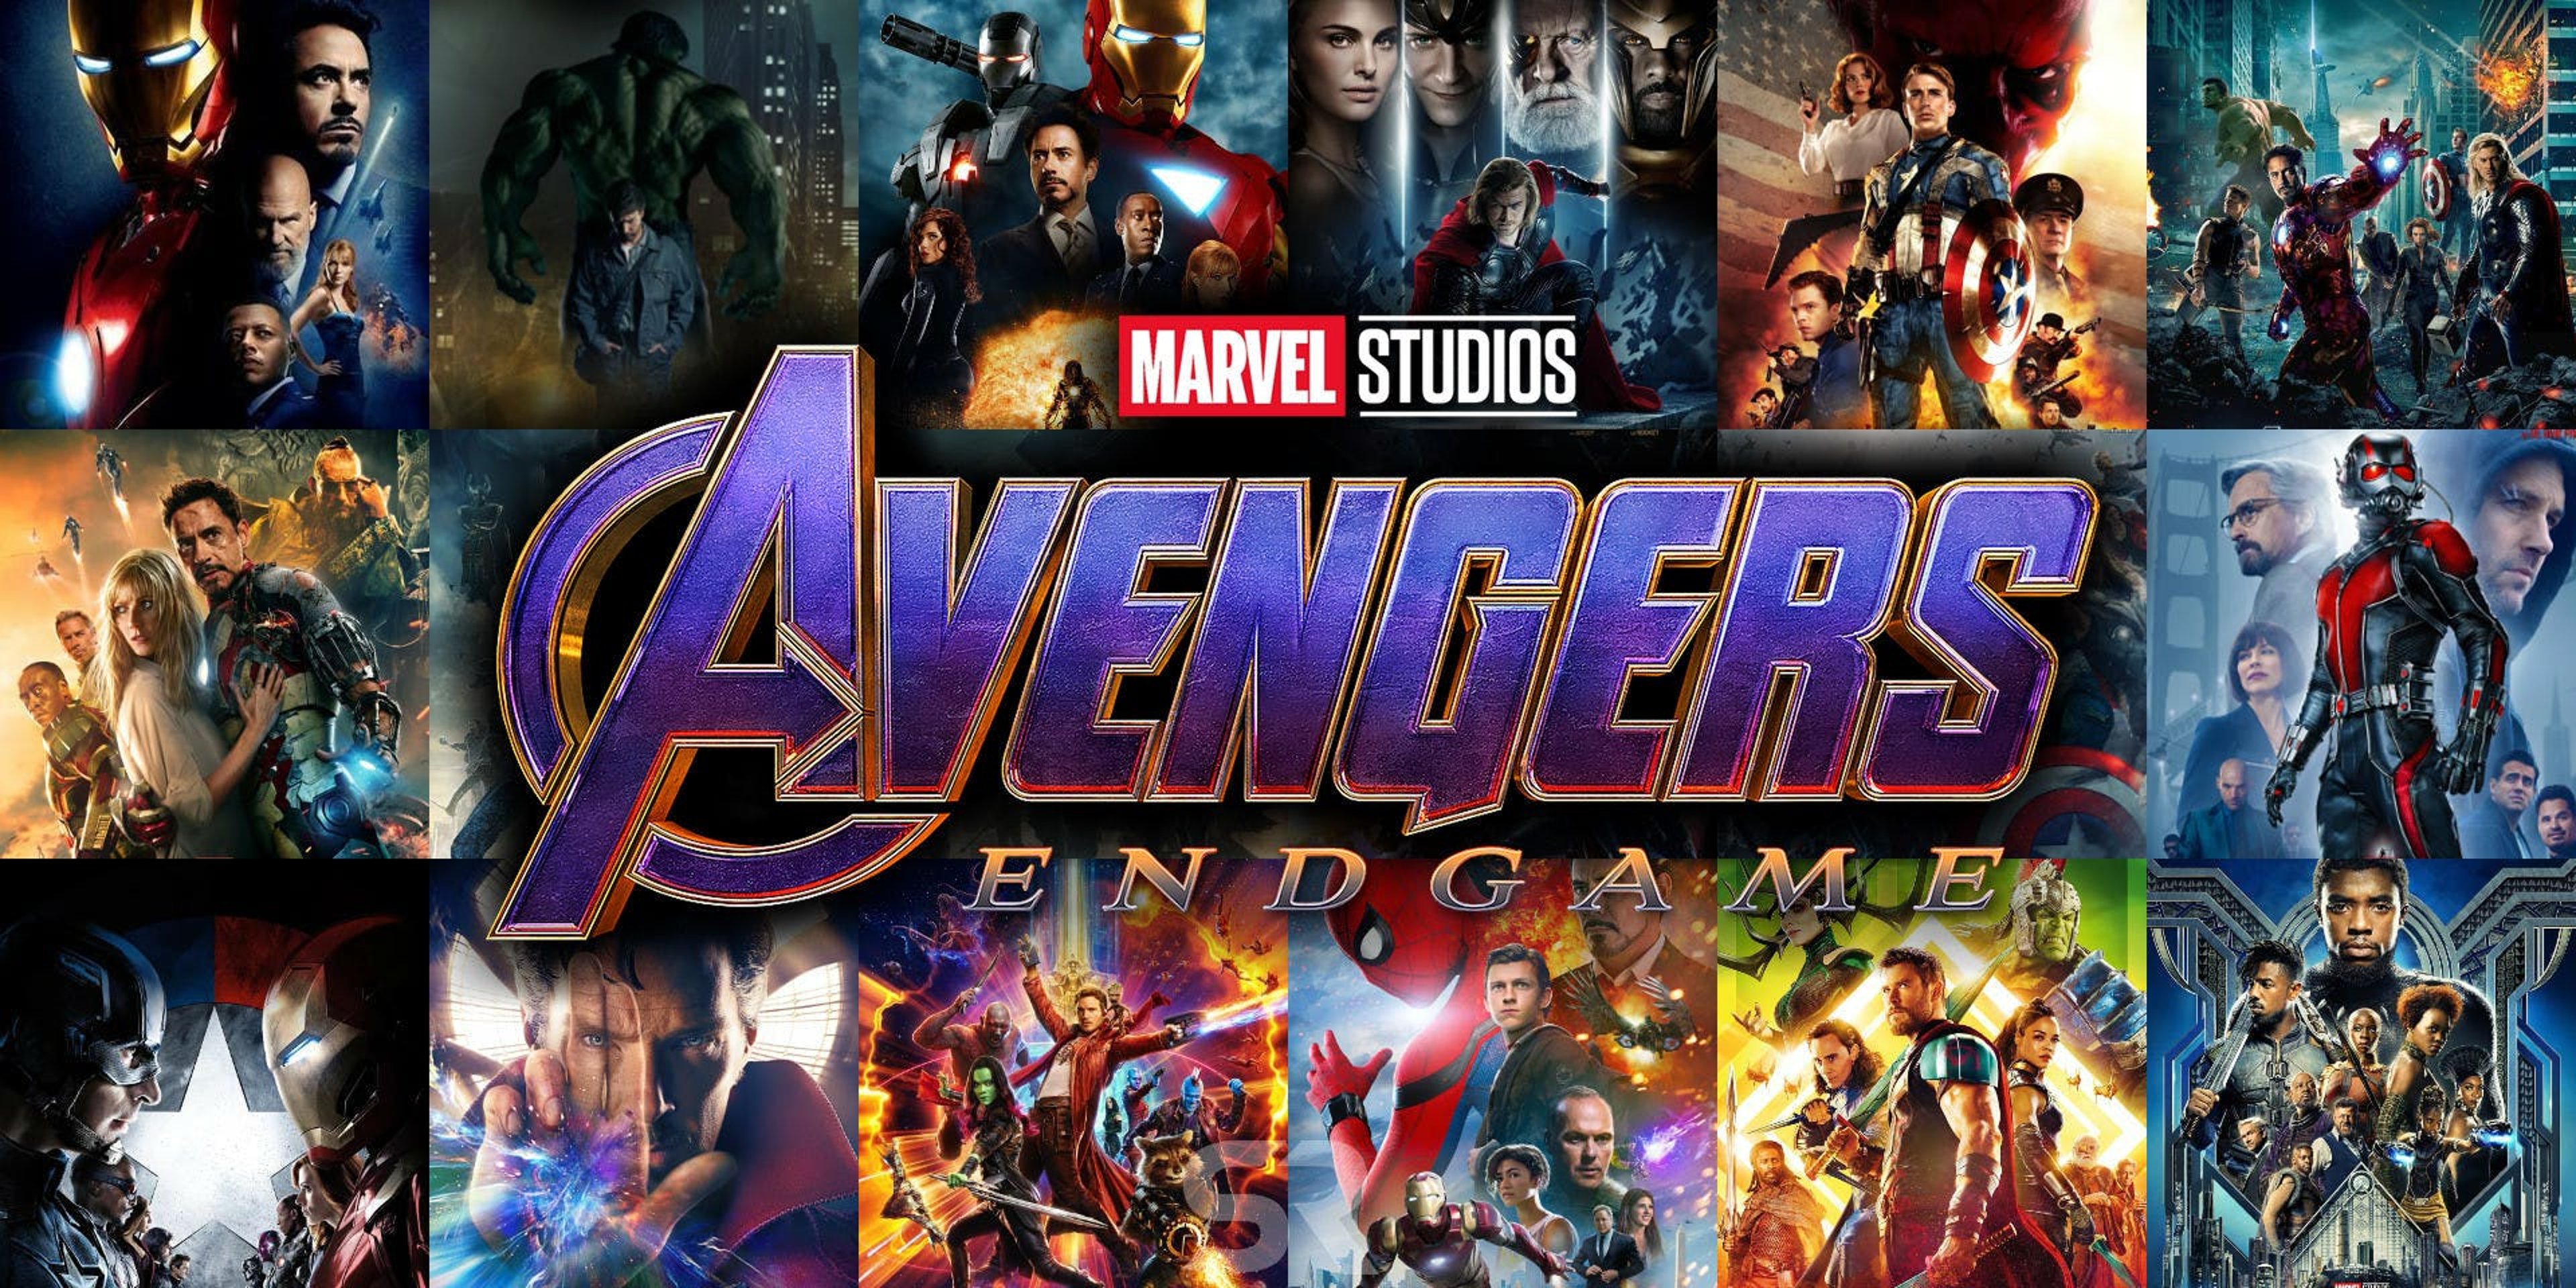 Avengers: ENDGAME – pareri a caldo di un capolavoro assoluto! NO SPOILER